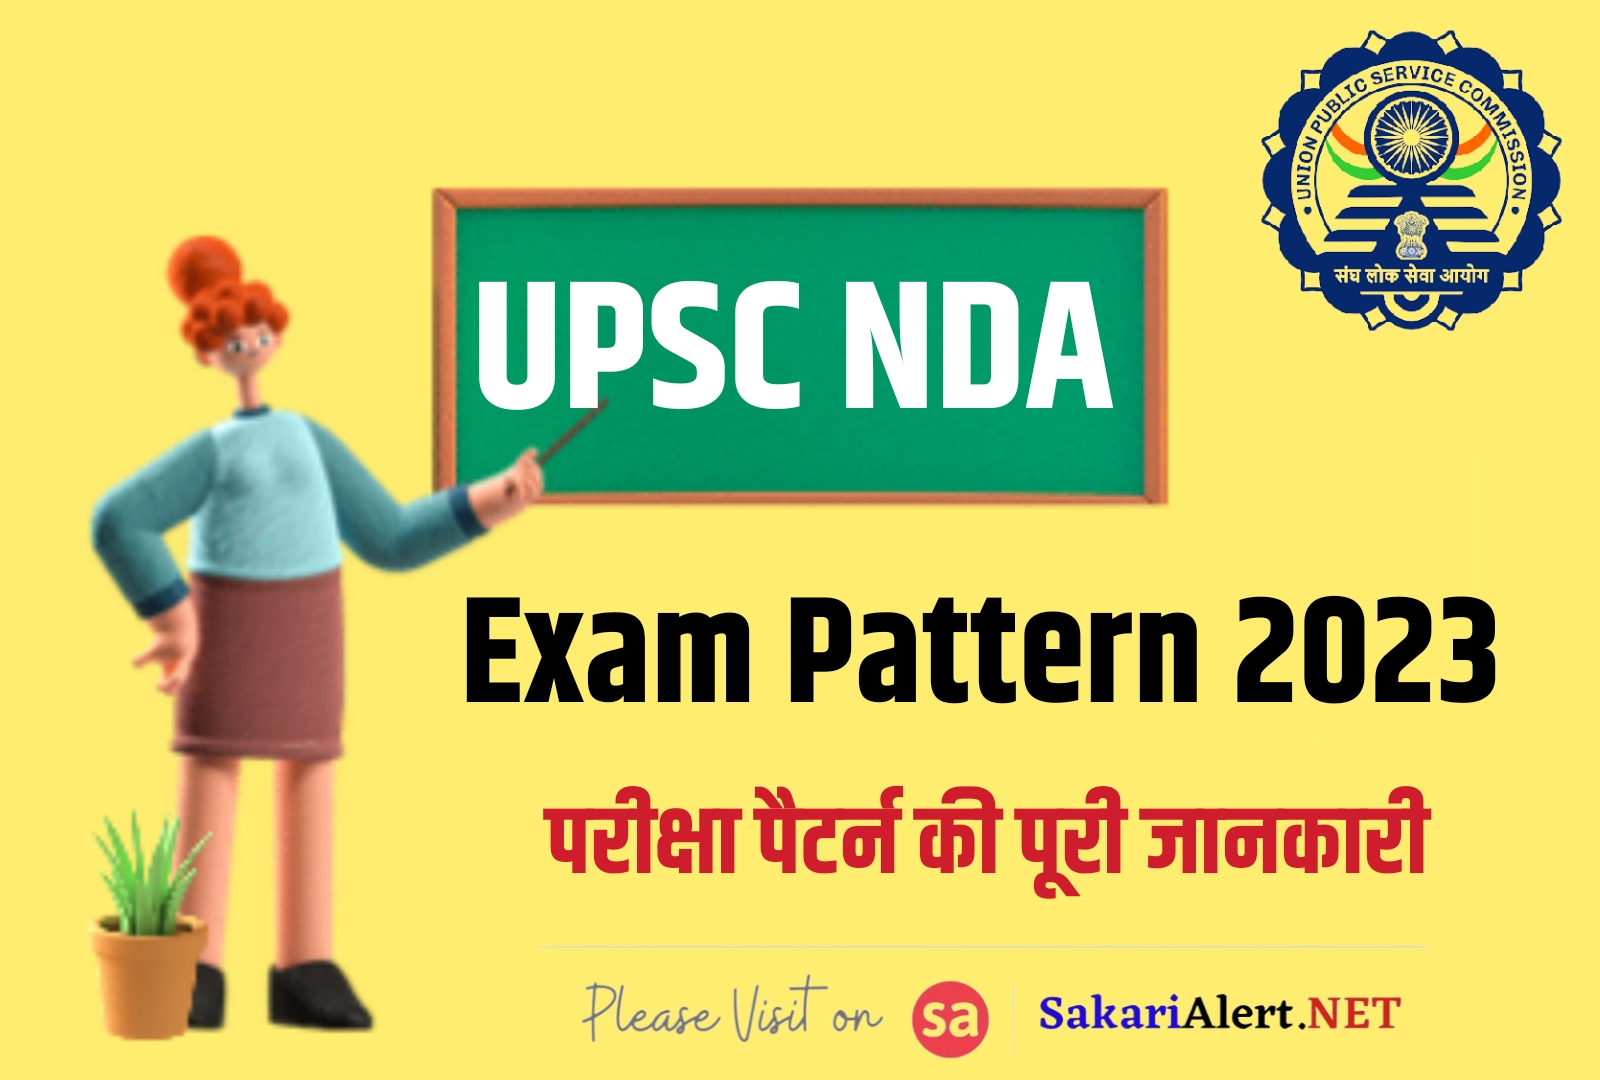 UPSC NDA Exam Pattern 2023